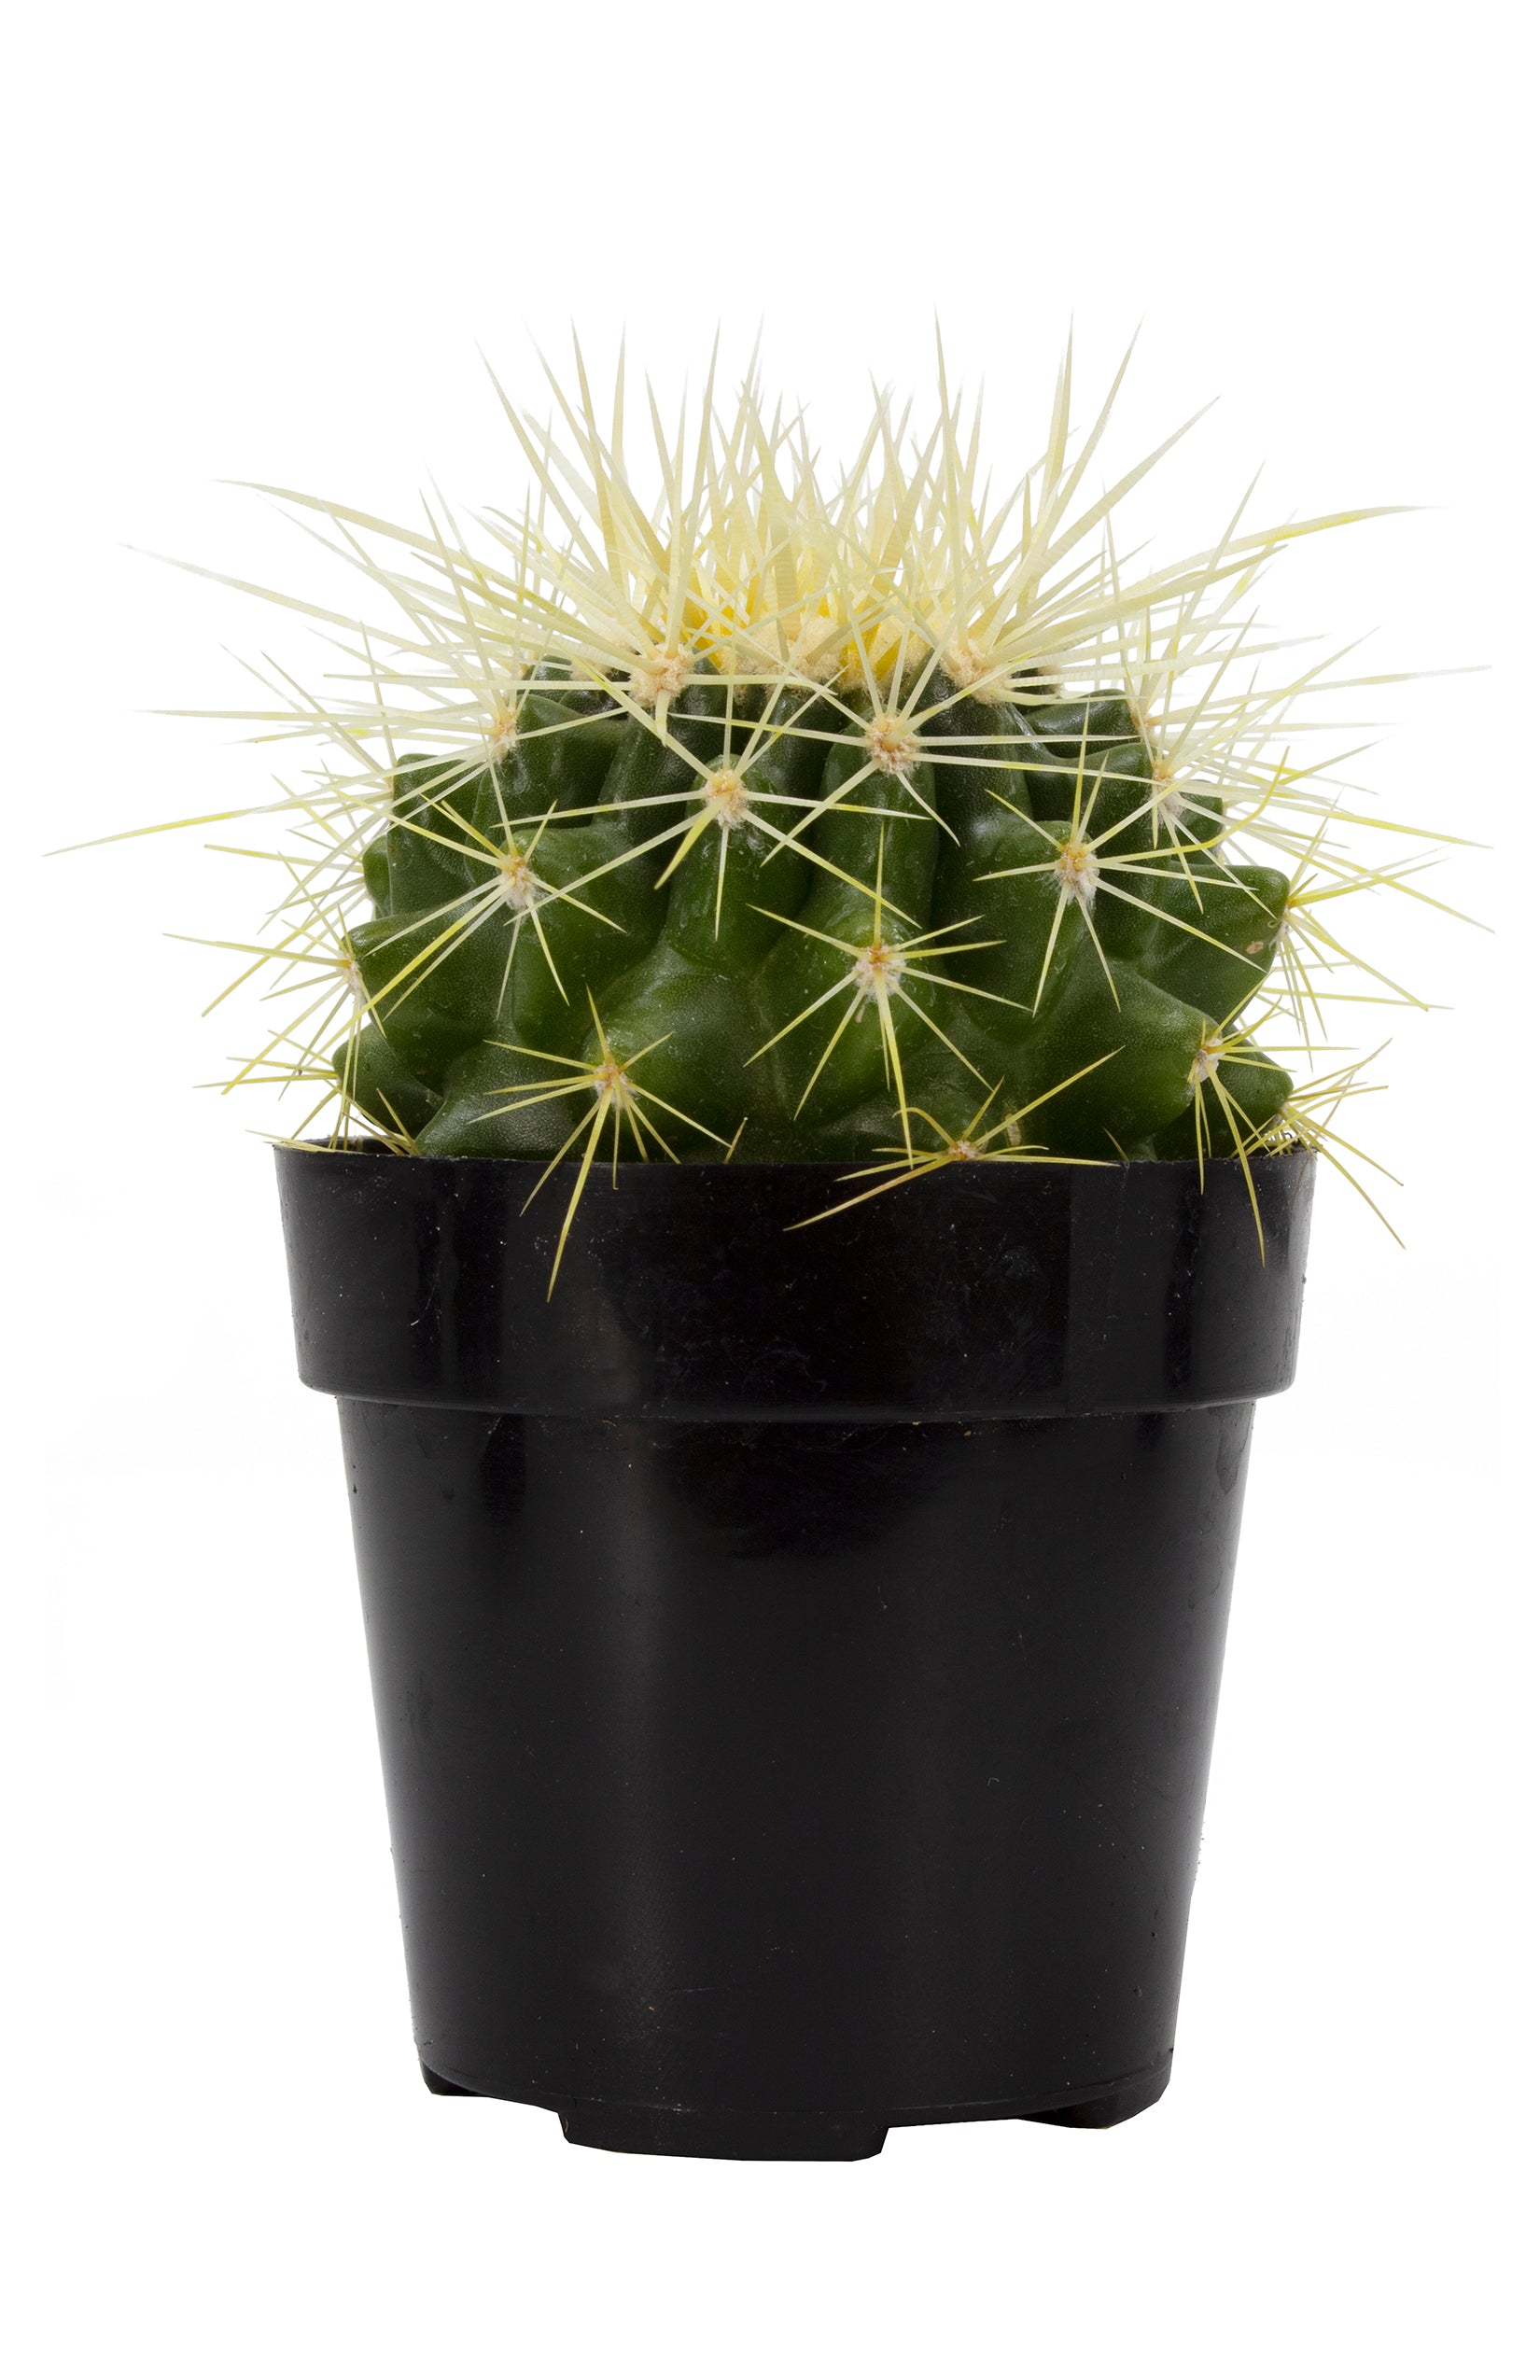 Echinocactus grusonii “Golden Barrel Cactus”